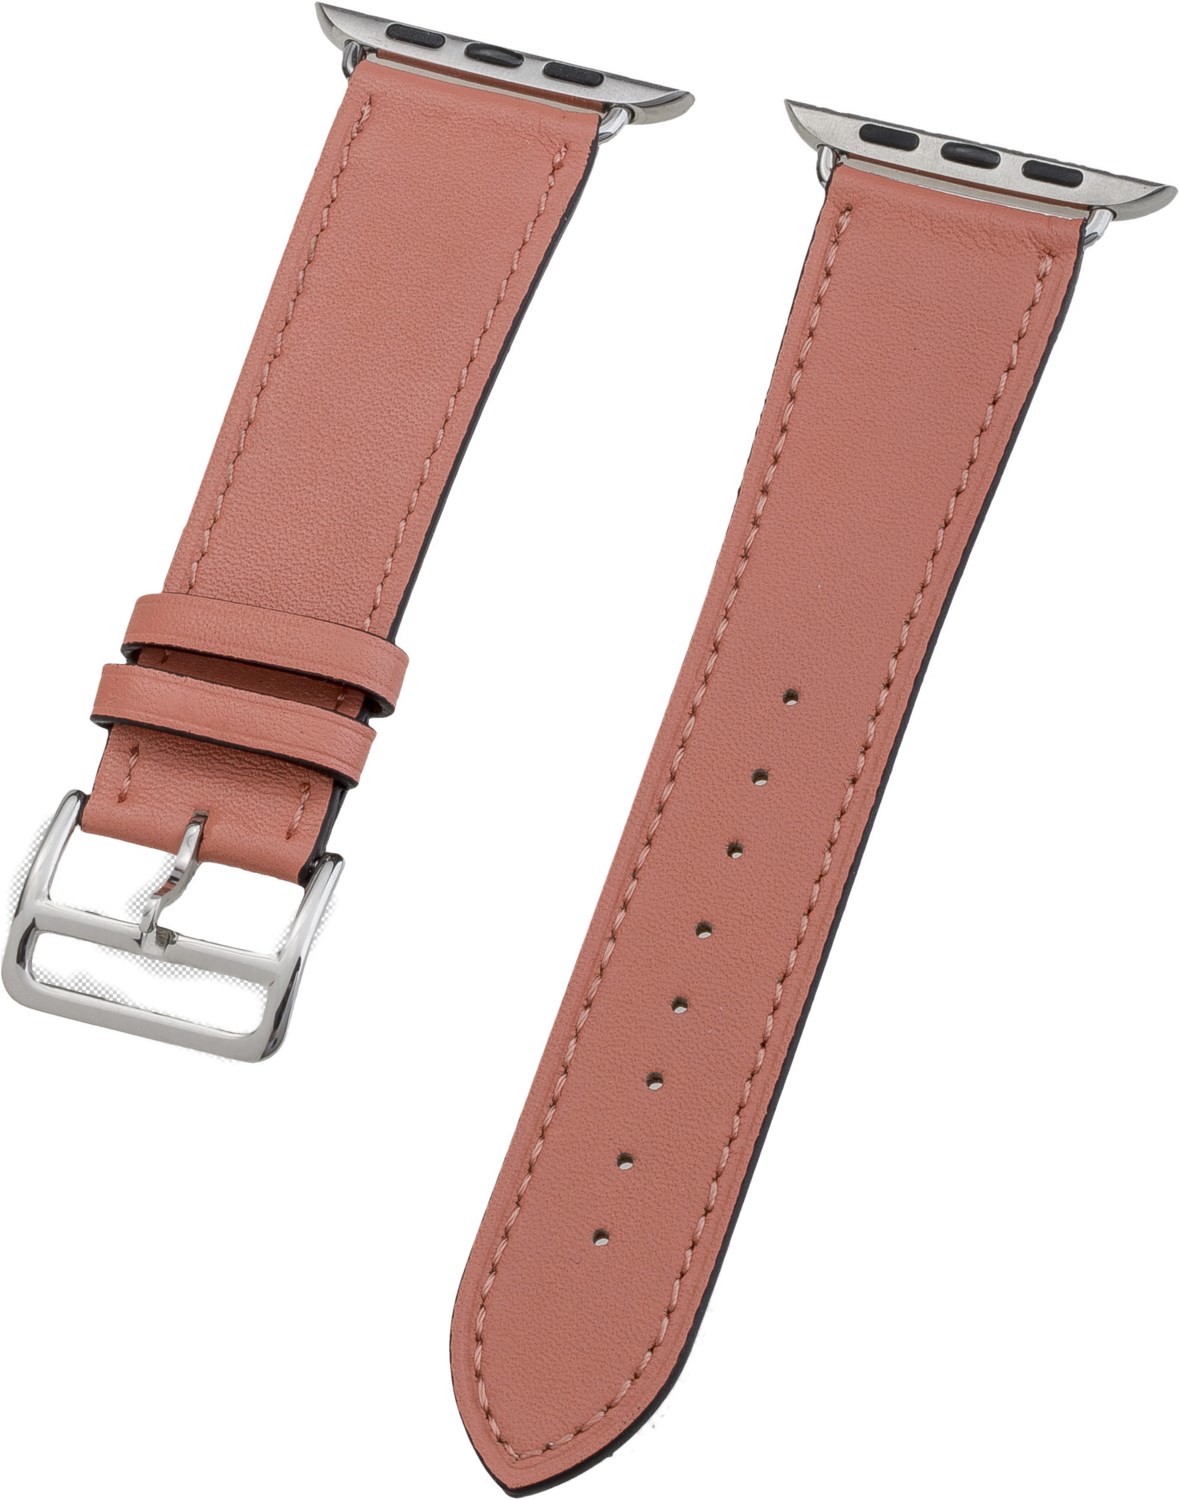 Watch Band Leder für Apple Watch (44mm/42mm) orange